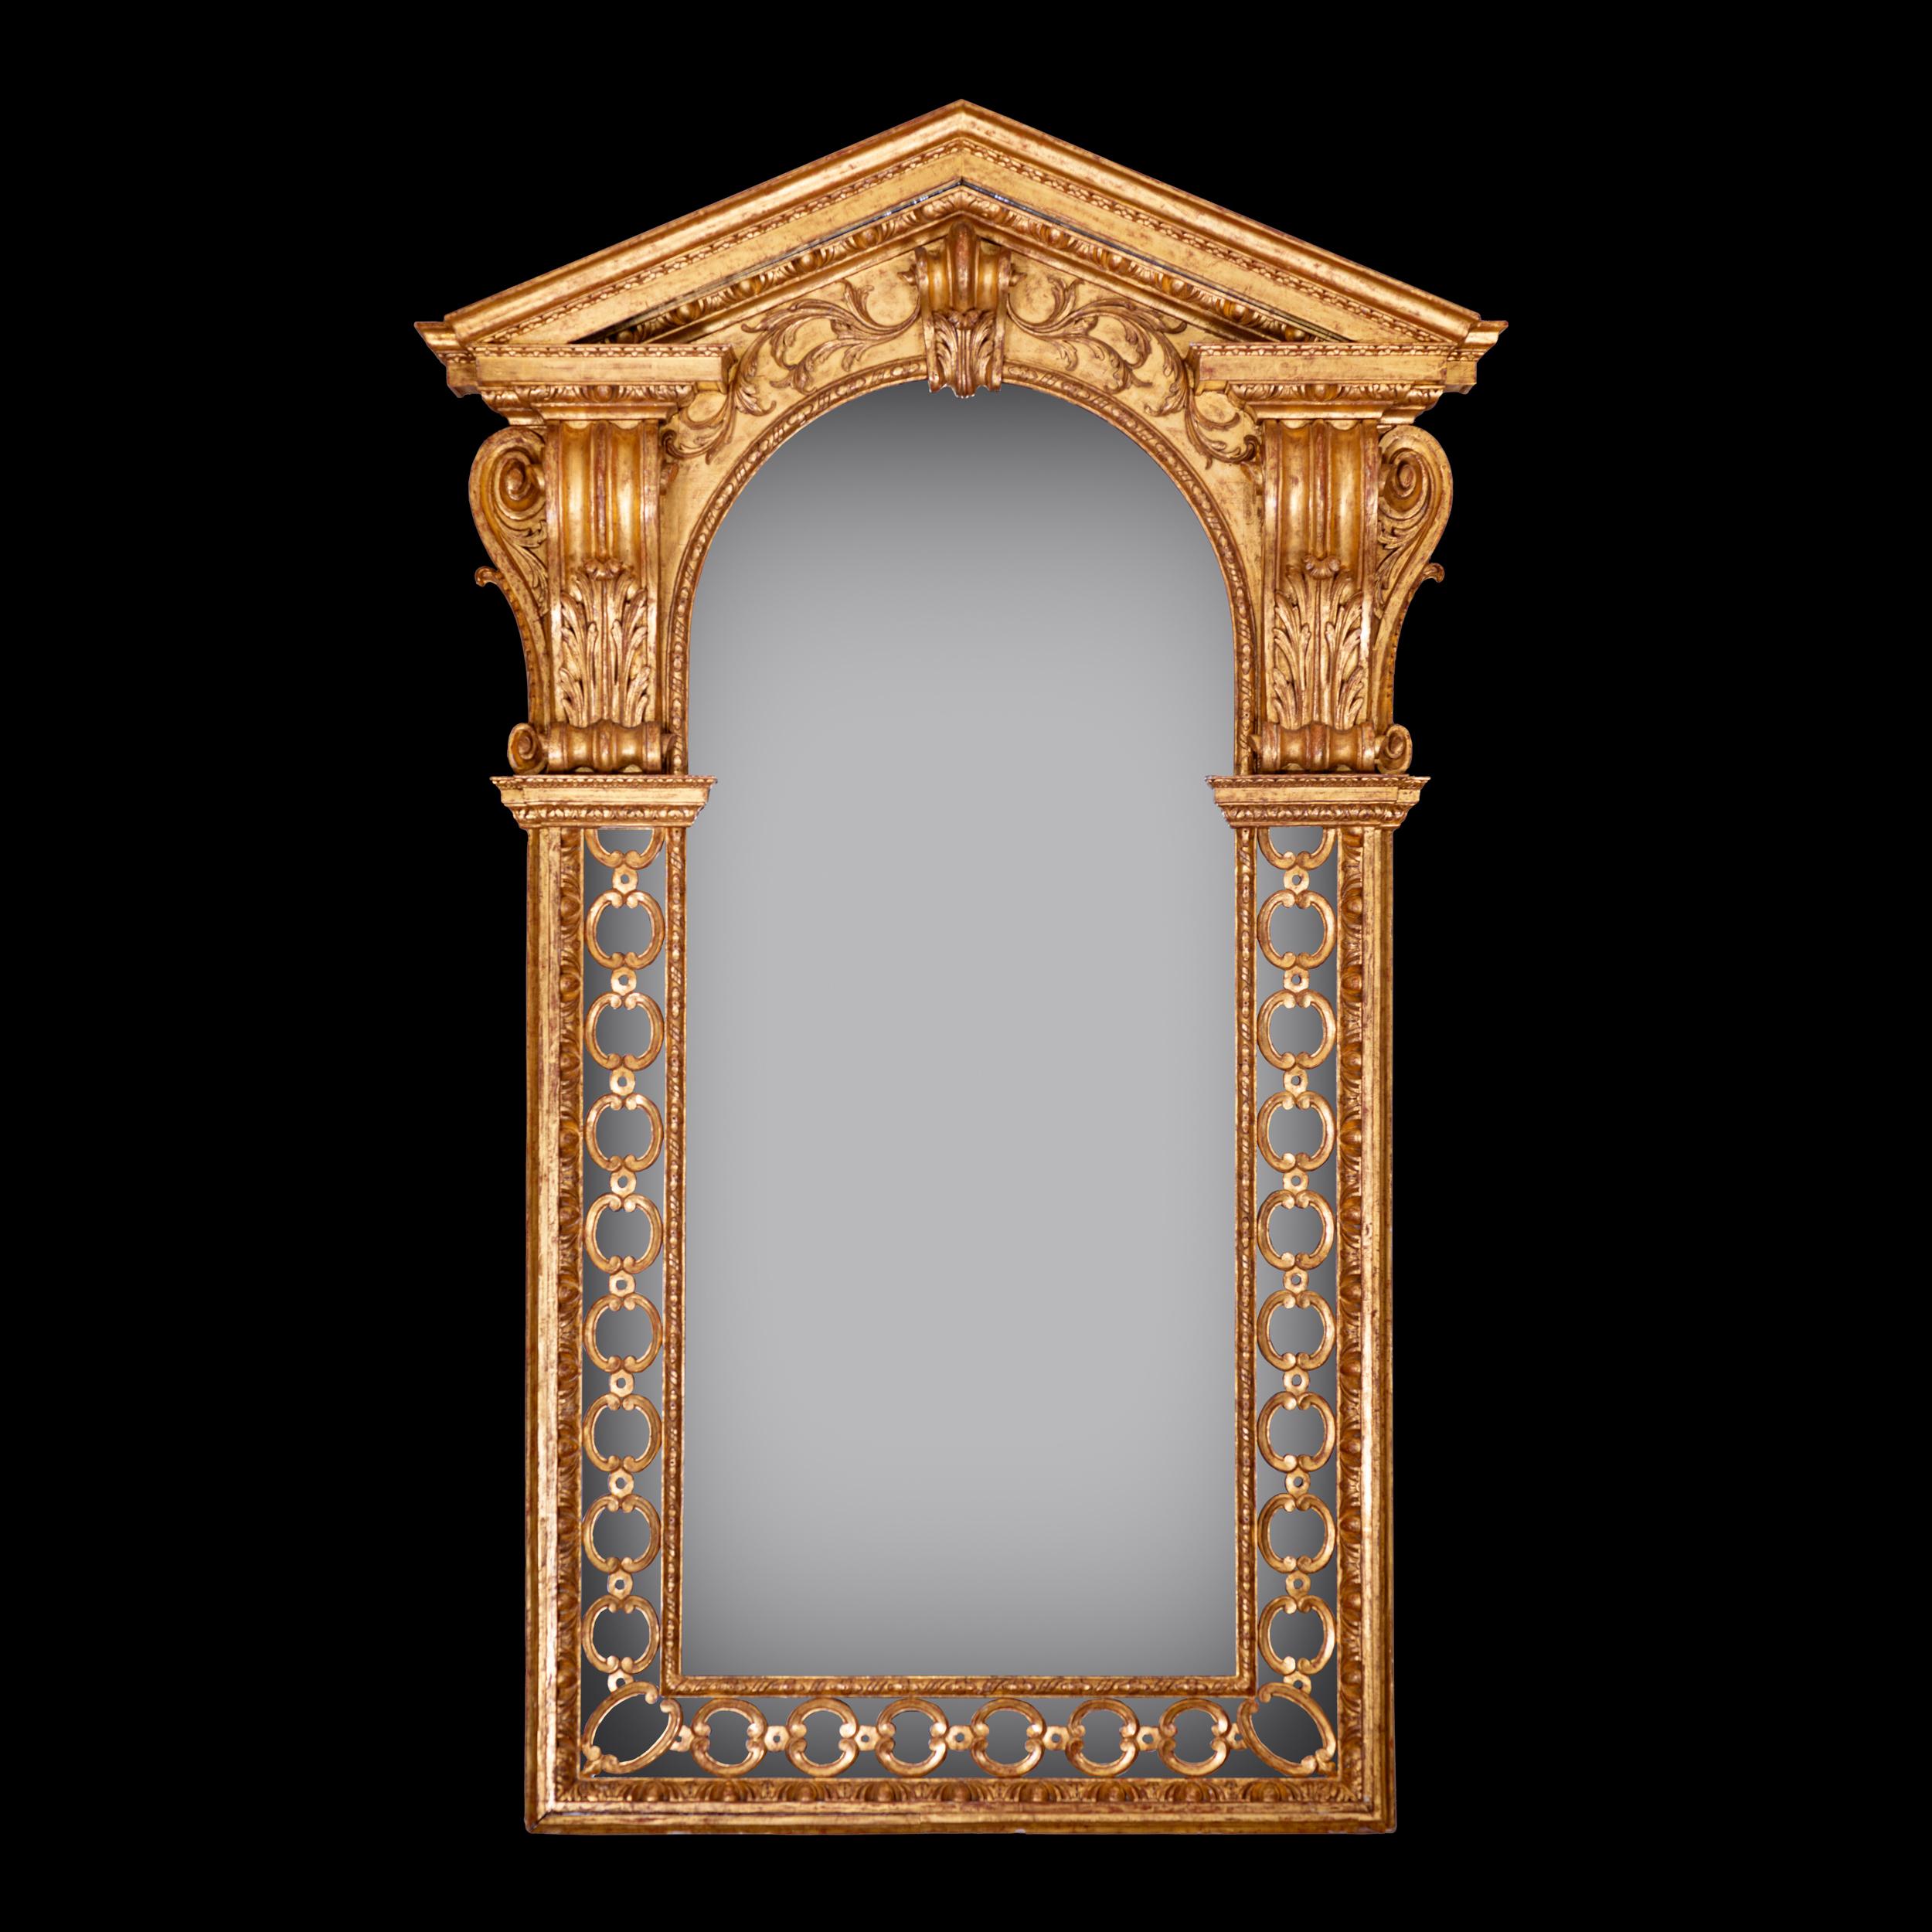 Cet extraordinaire miroir architectural appartient à un groupe de miroirs de la famille Booker qui partagent tous les mêmes fortes influences de William Kent... Un dessin de Kent pour un buffet d'orgue, gravé par John Vardy, est lié à la conception